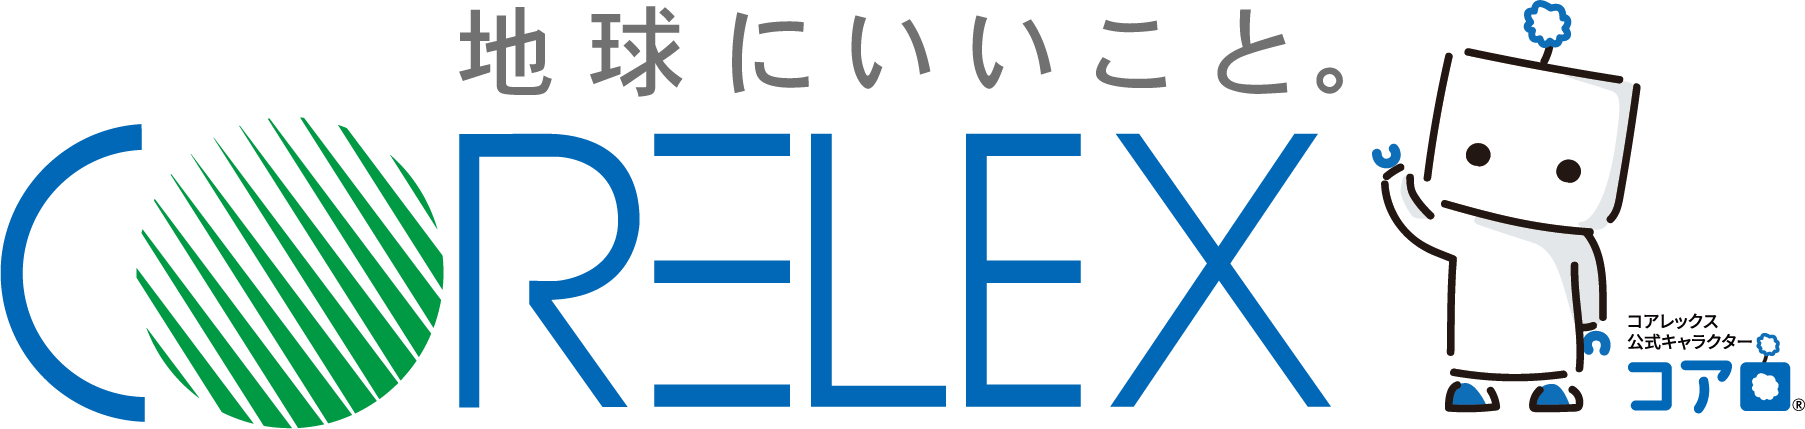 コアレックス公式オンラインショップ ロゴ